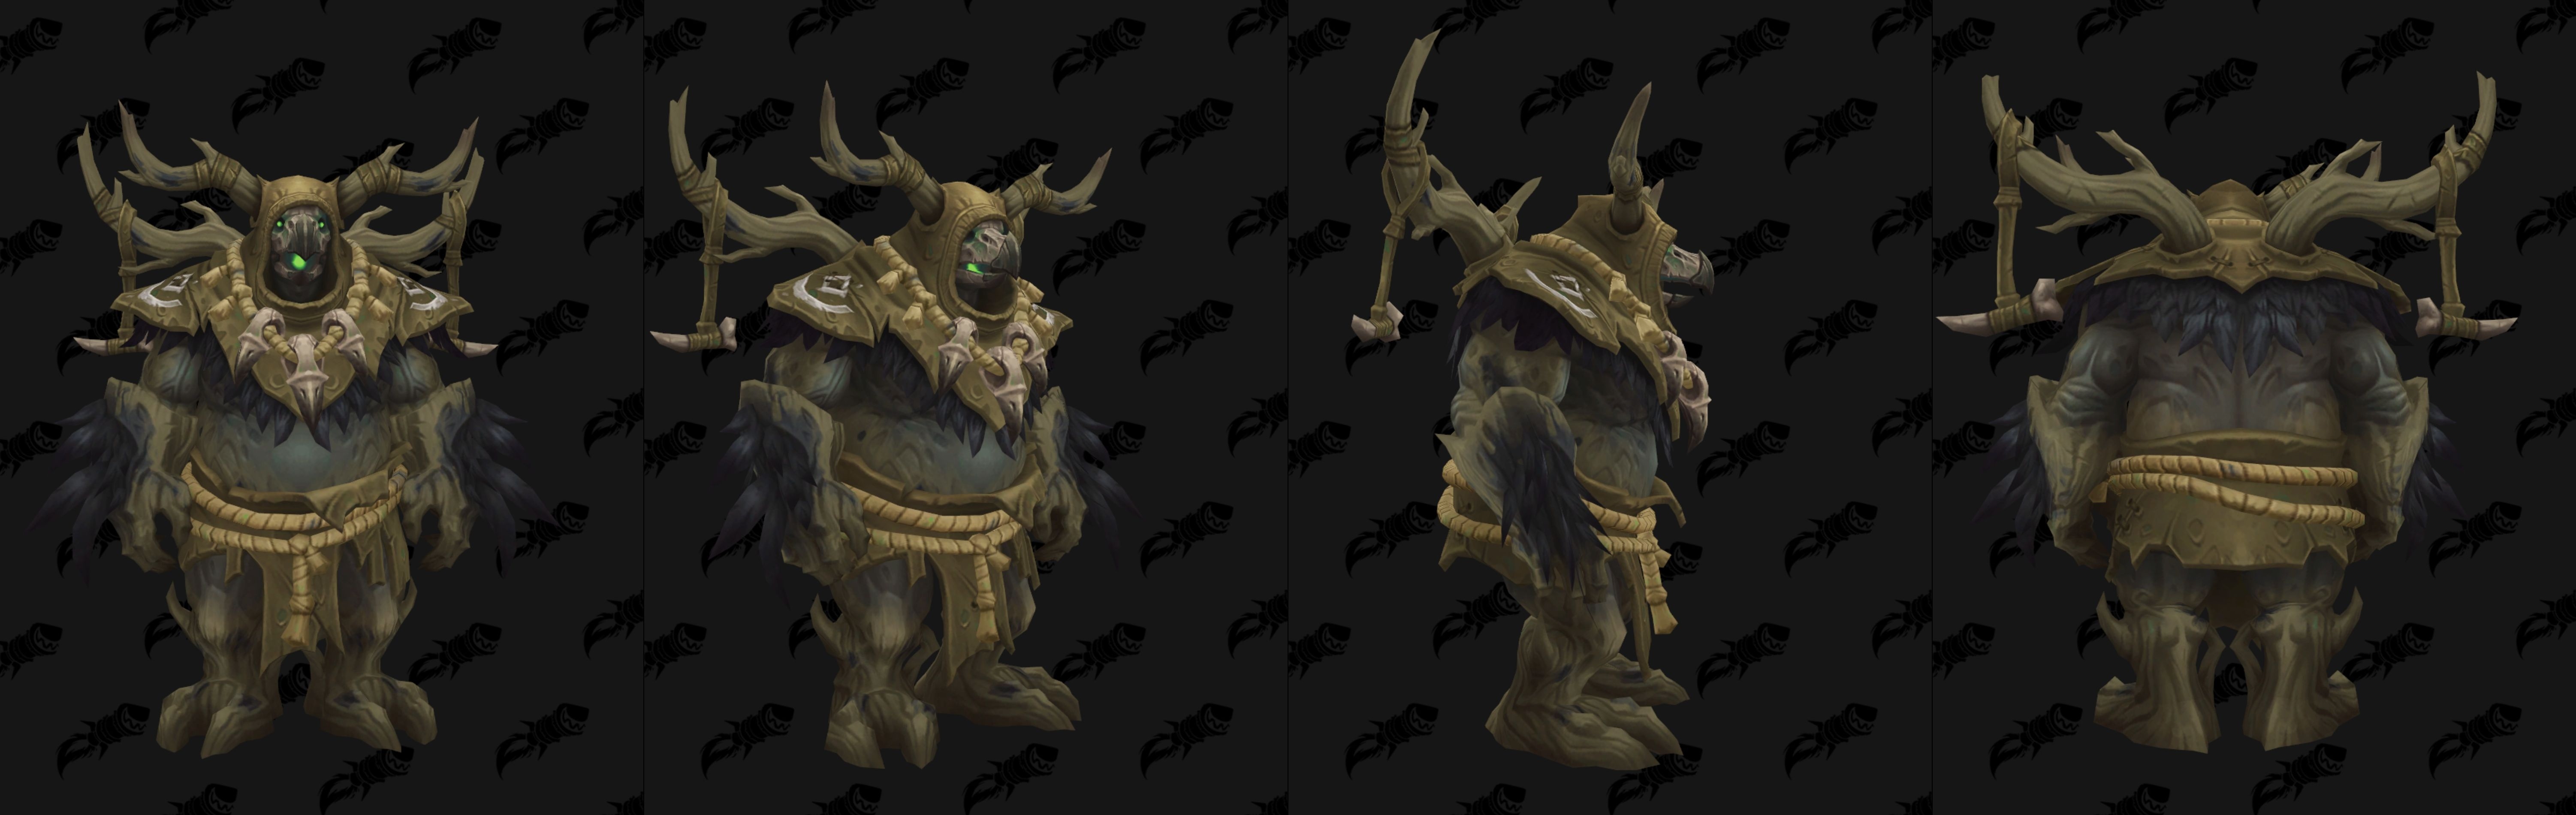 World Of Warcraft Kul Tiran Druid Forms